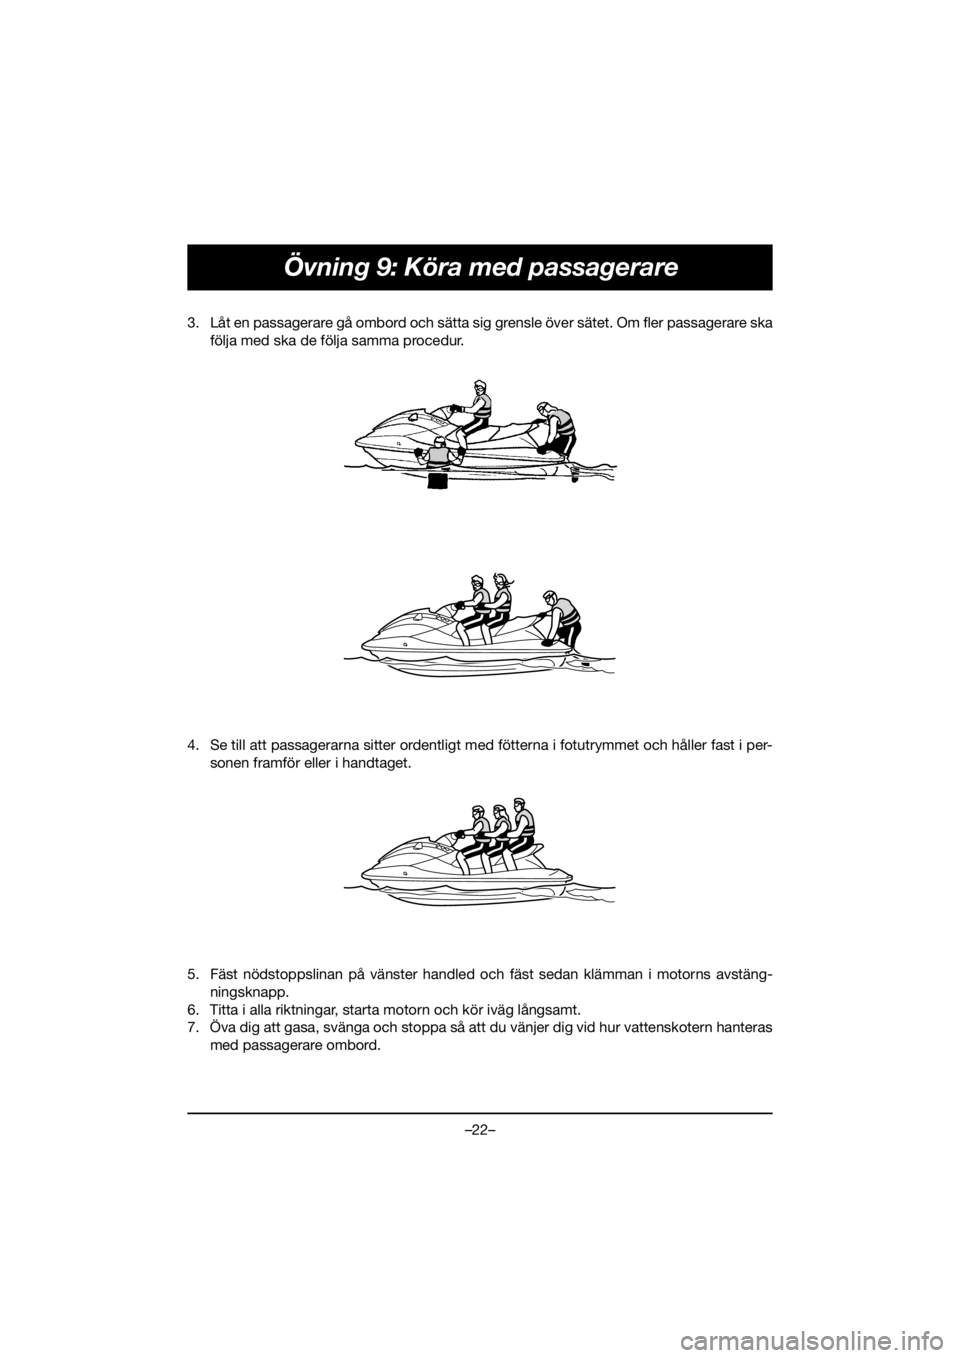 YAMAHA VX CRUISER HO 2020  Manual de utilização (in Portuguese) –22–
Övning 9: Köra med passagerare
3. Låt en passagerare gå ombord och sätta sig grensle över sätet. Om fler passagerare ska
följa med ska de följa samma procedur. 
4. Se till att passag